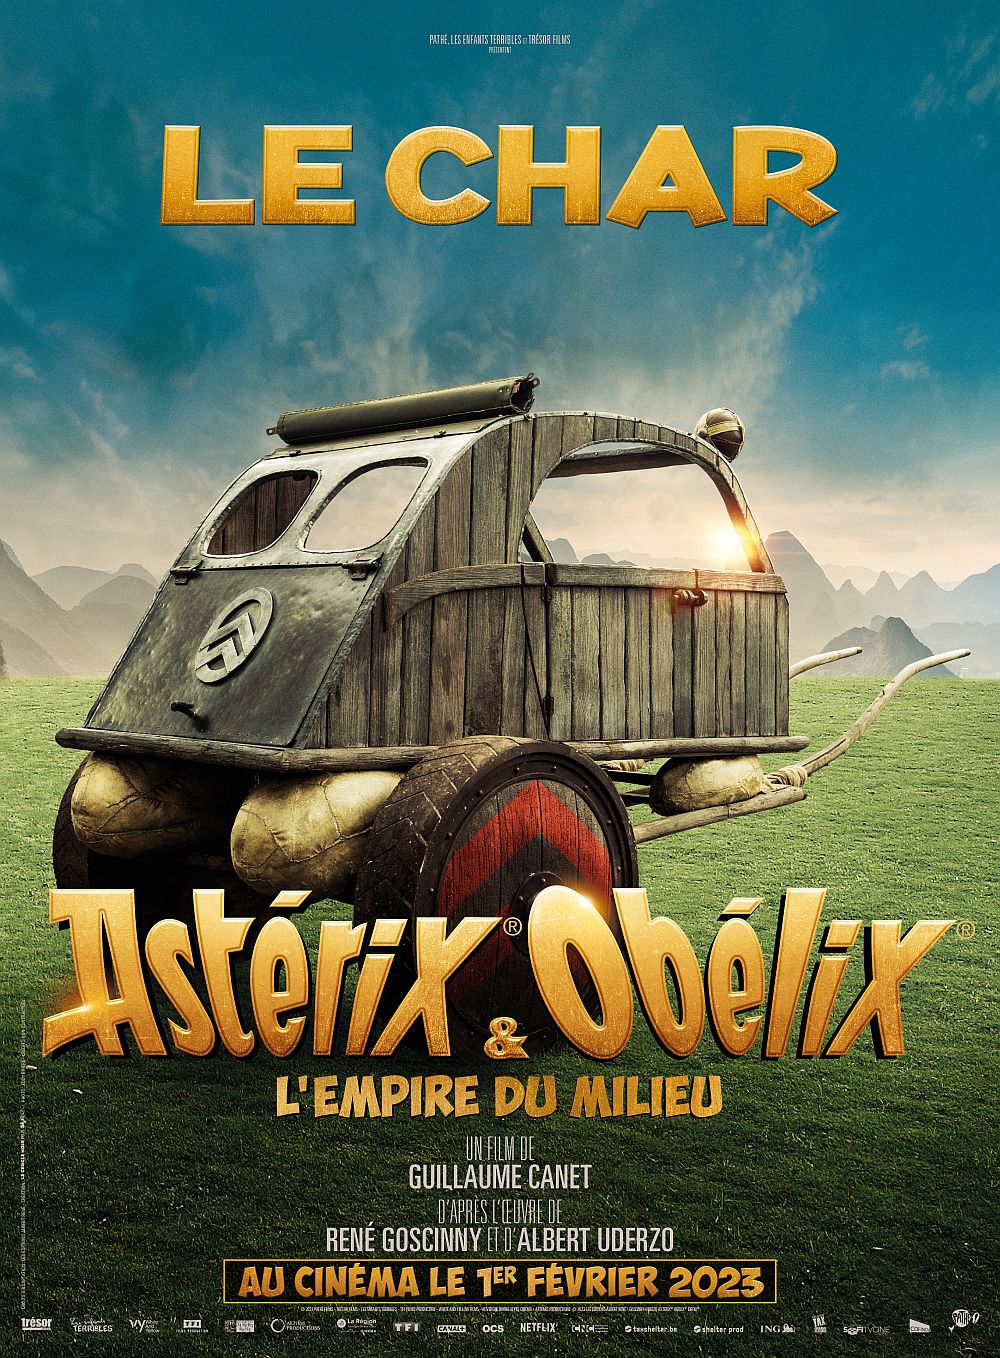 Asterix Obelix